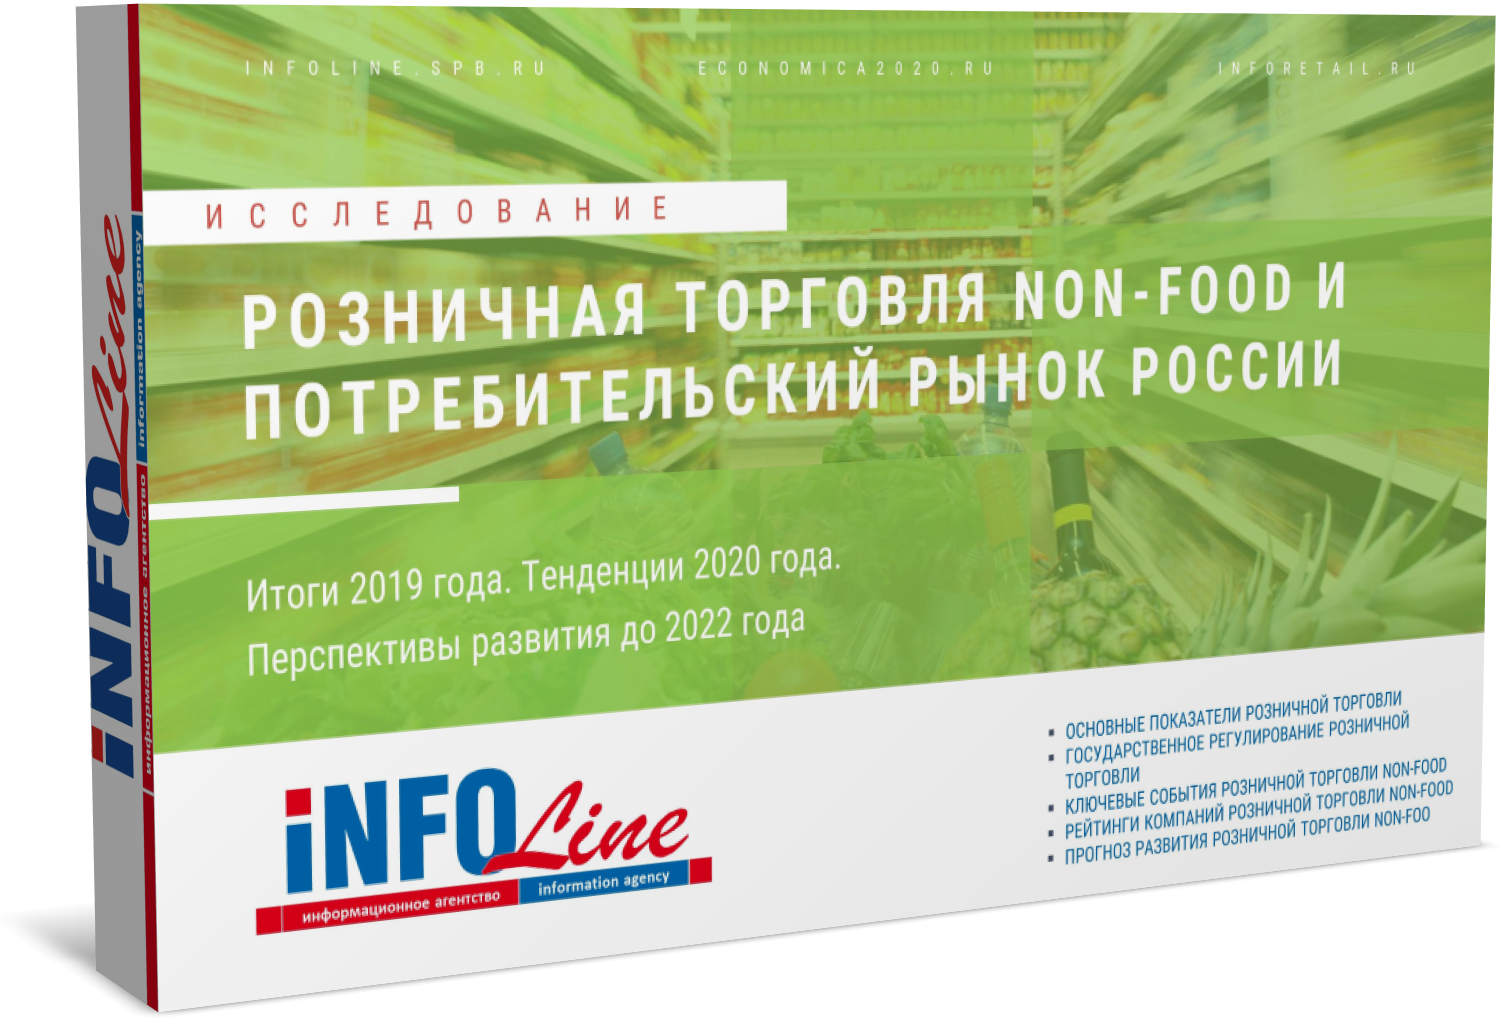 "Розничная торговля Non-Food и потребительский рынок России 2020 года. Итоги 2019 года и перспективы развития до 2022 года"